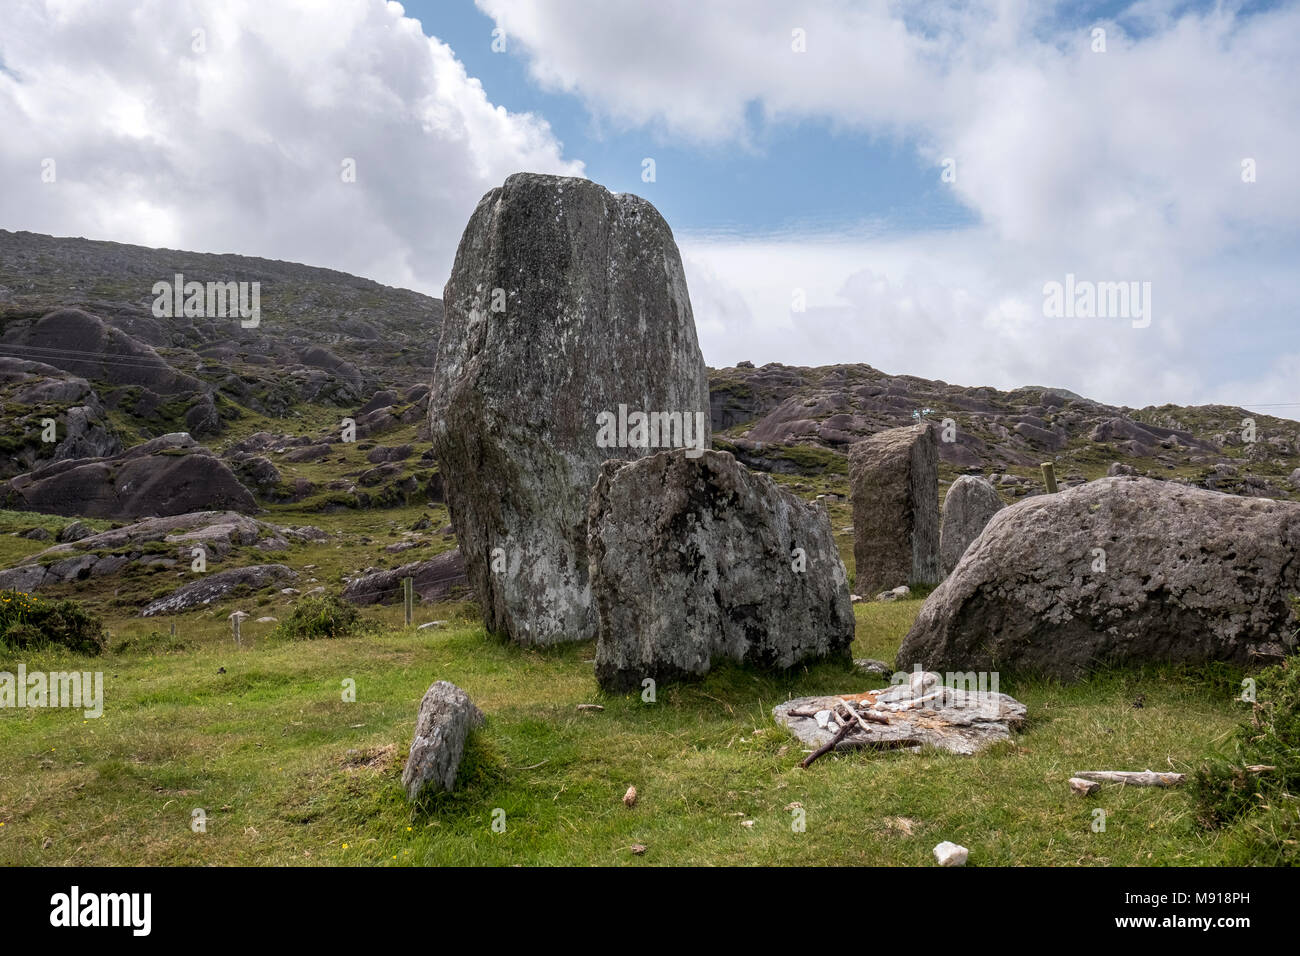 Irlanda. Ardgroom círculo de piedra. La península de Beara. En primer plano los restos de los rituales de los celtas 'moderna'. Foto de stock